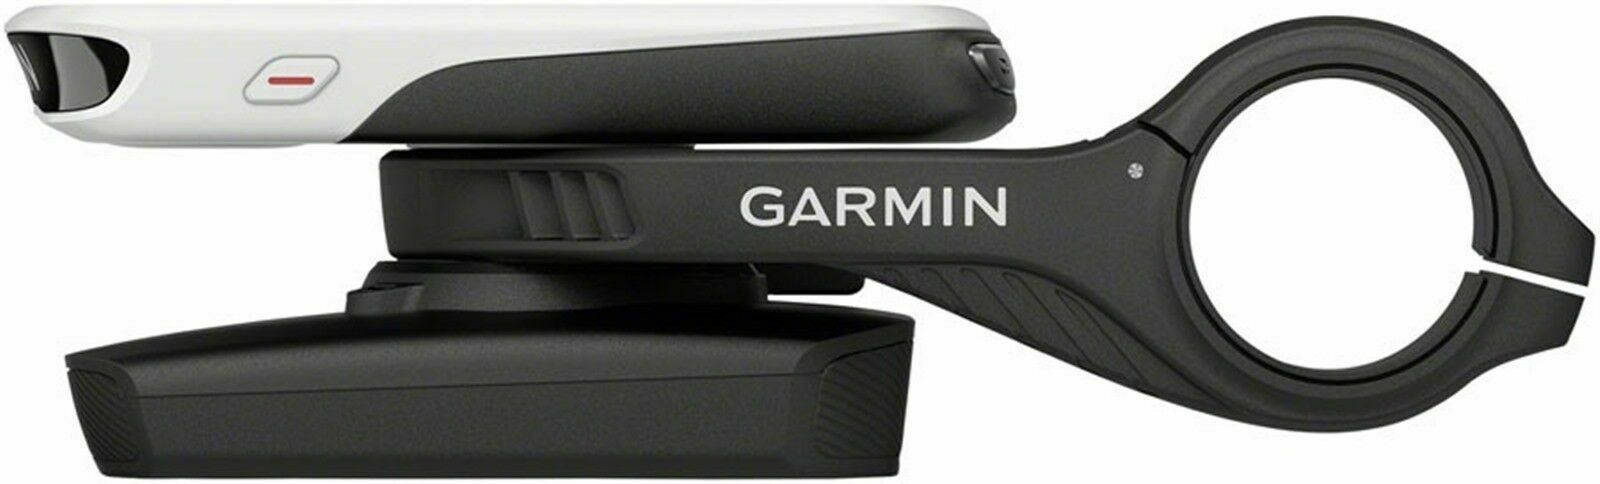 Garmin Charge Power Pack (externes Akkupack)